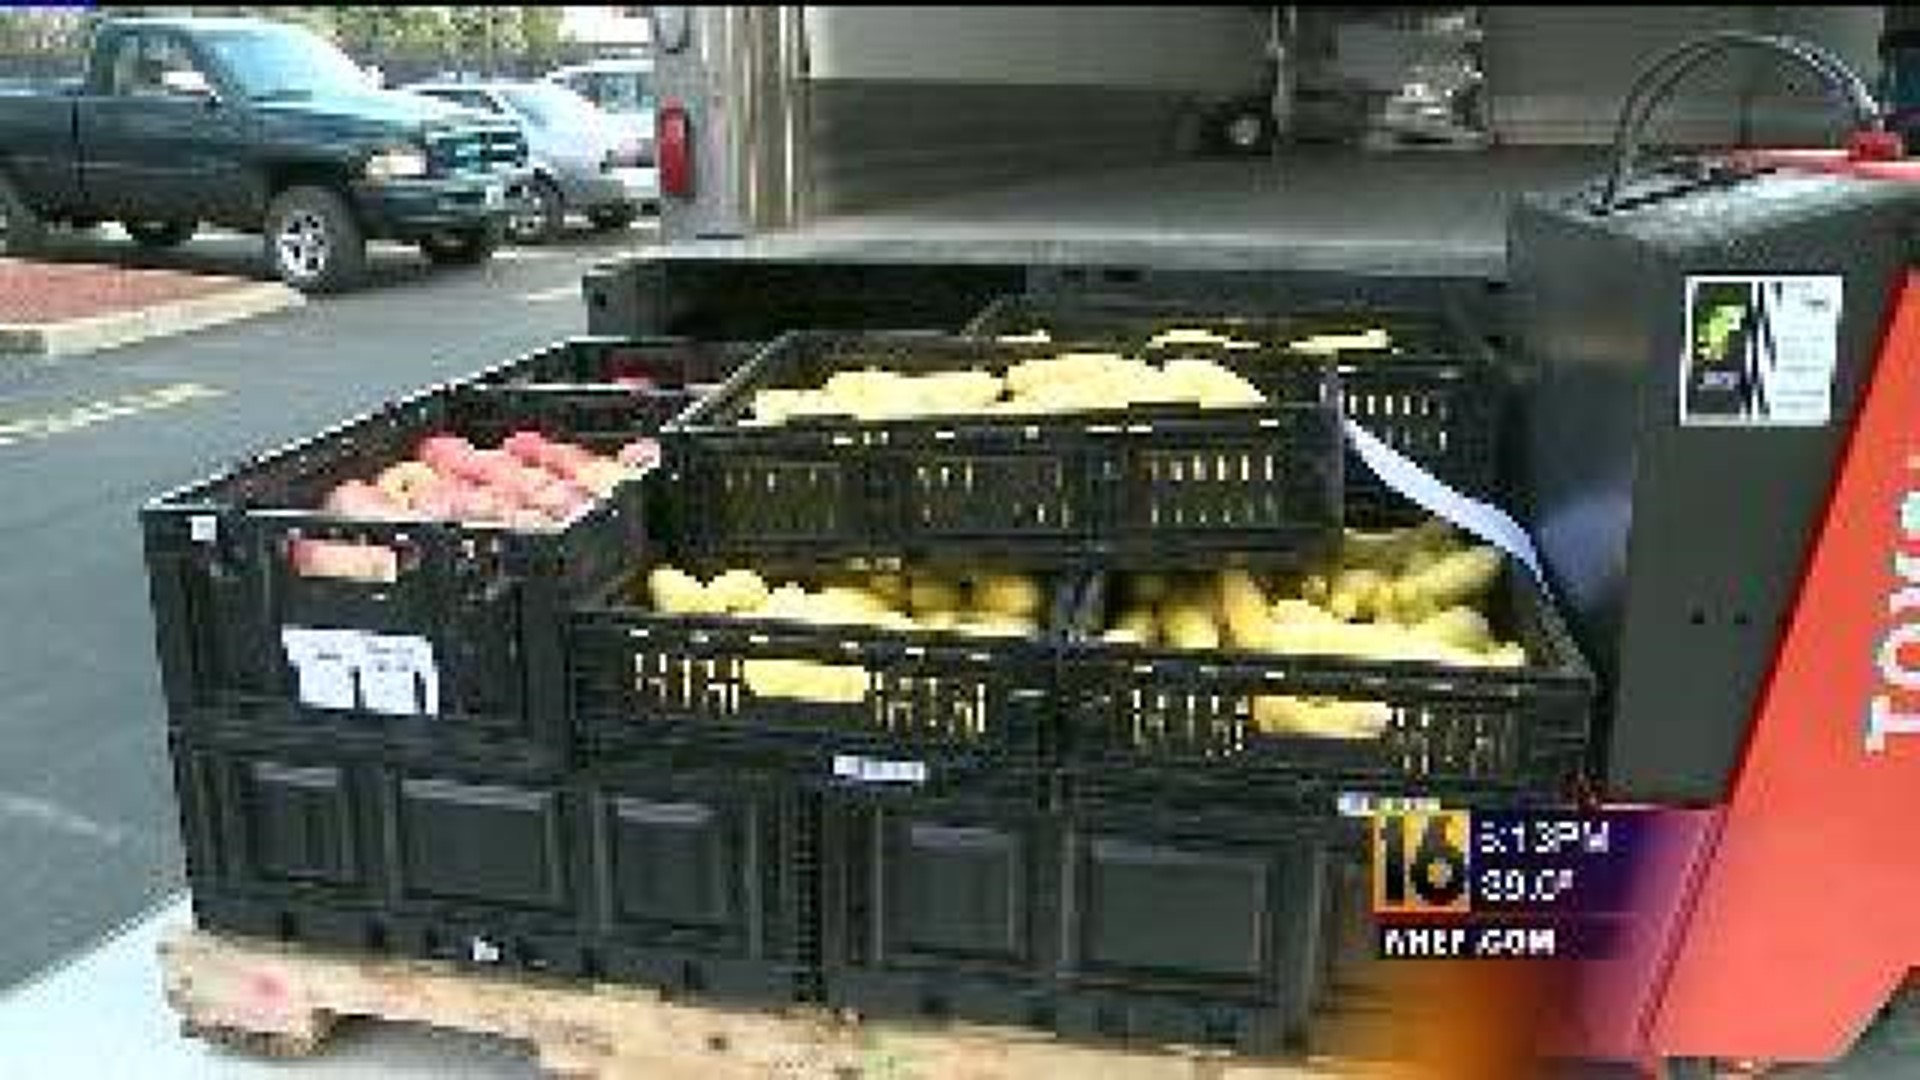 Food Bank Cooler Delivers on Fresh Food